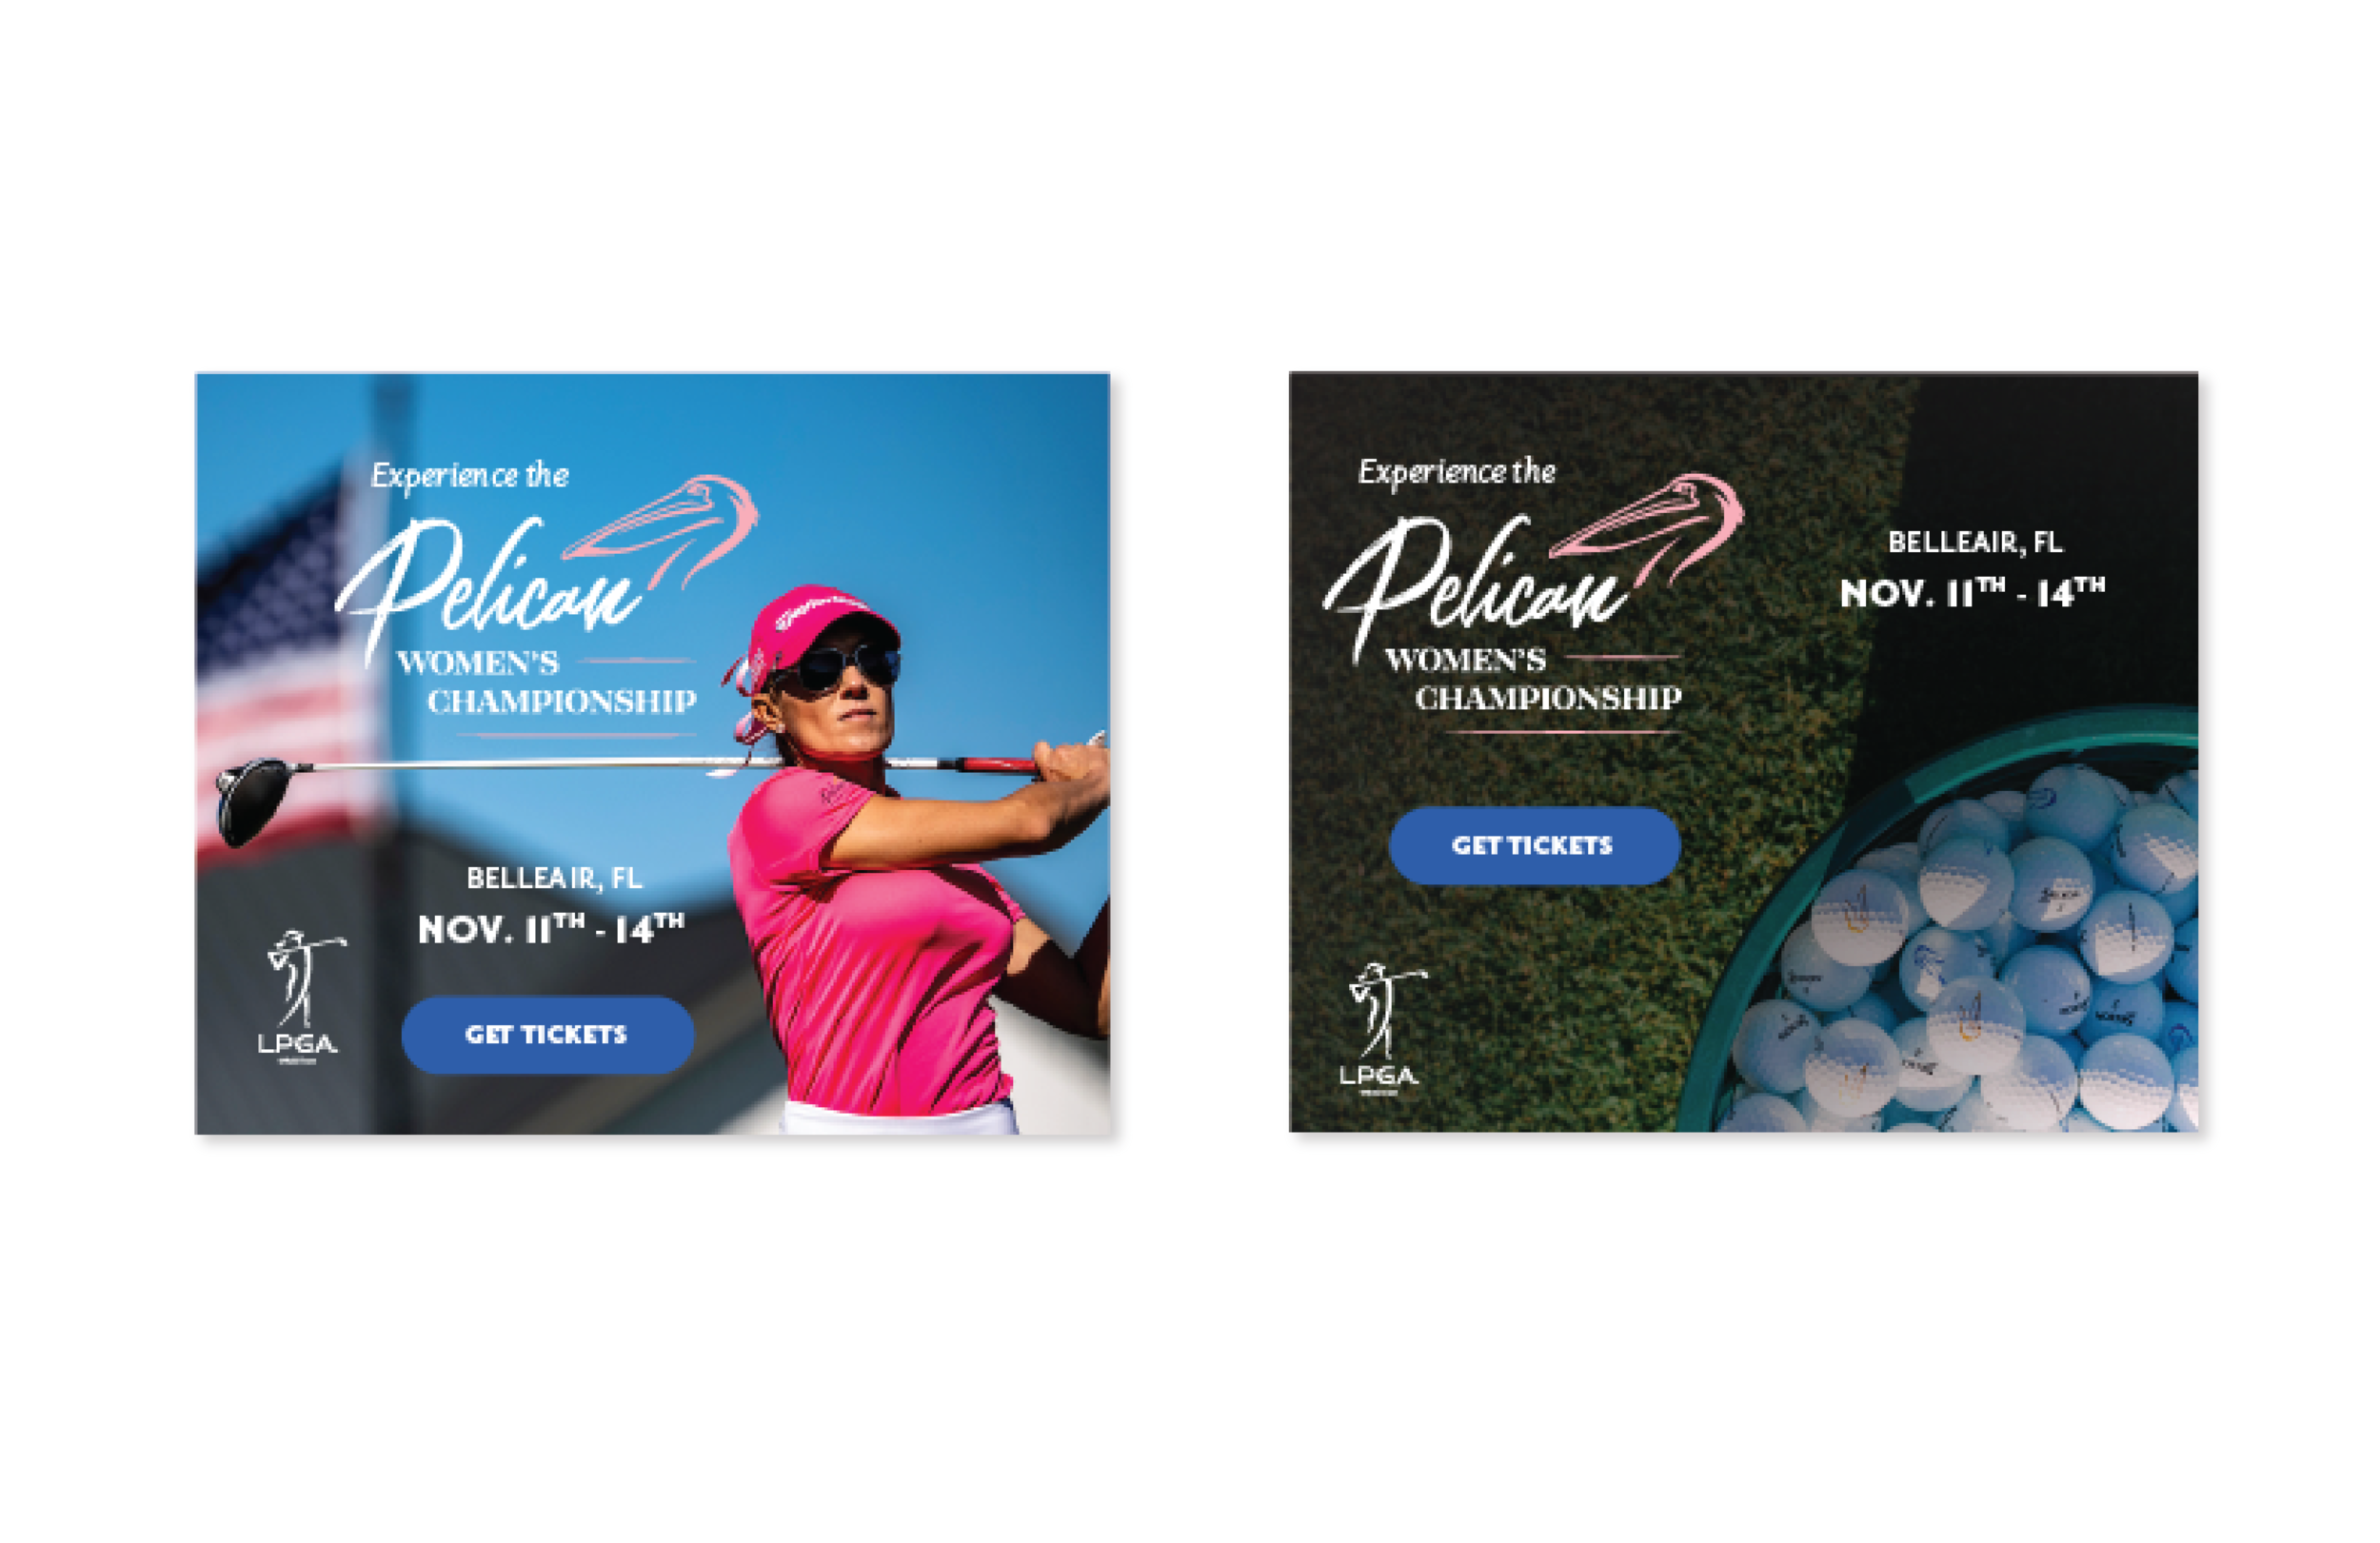  Pelican Women's Championship online banner advertisements. 